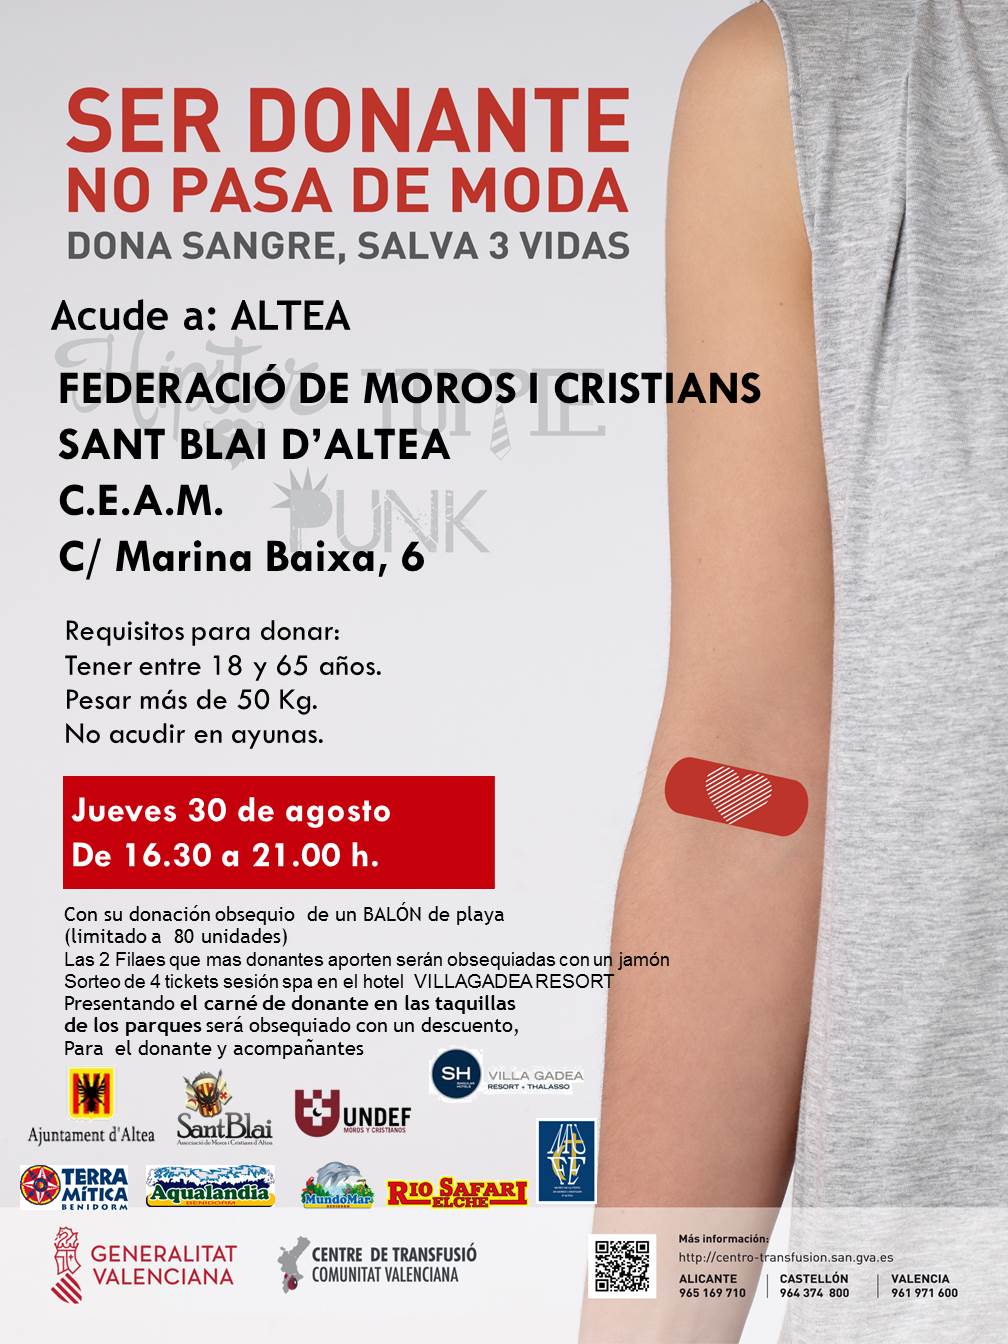 Dijous 30 d’agost, de 9:30 a 13:30h i de 16:30 a 21:00h en el CEAM, pots donar sang i salvar tres vides